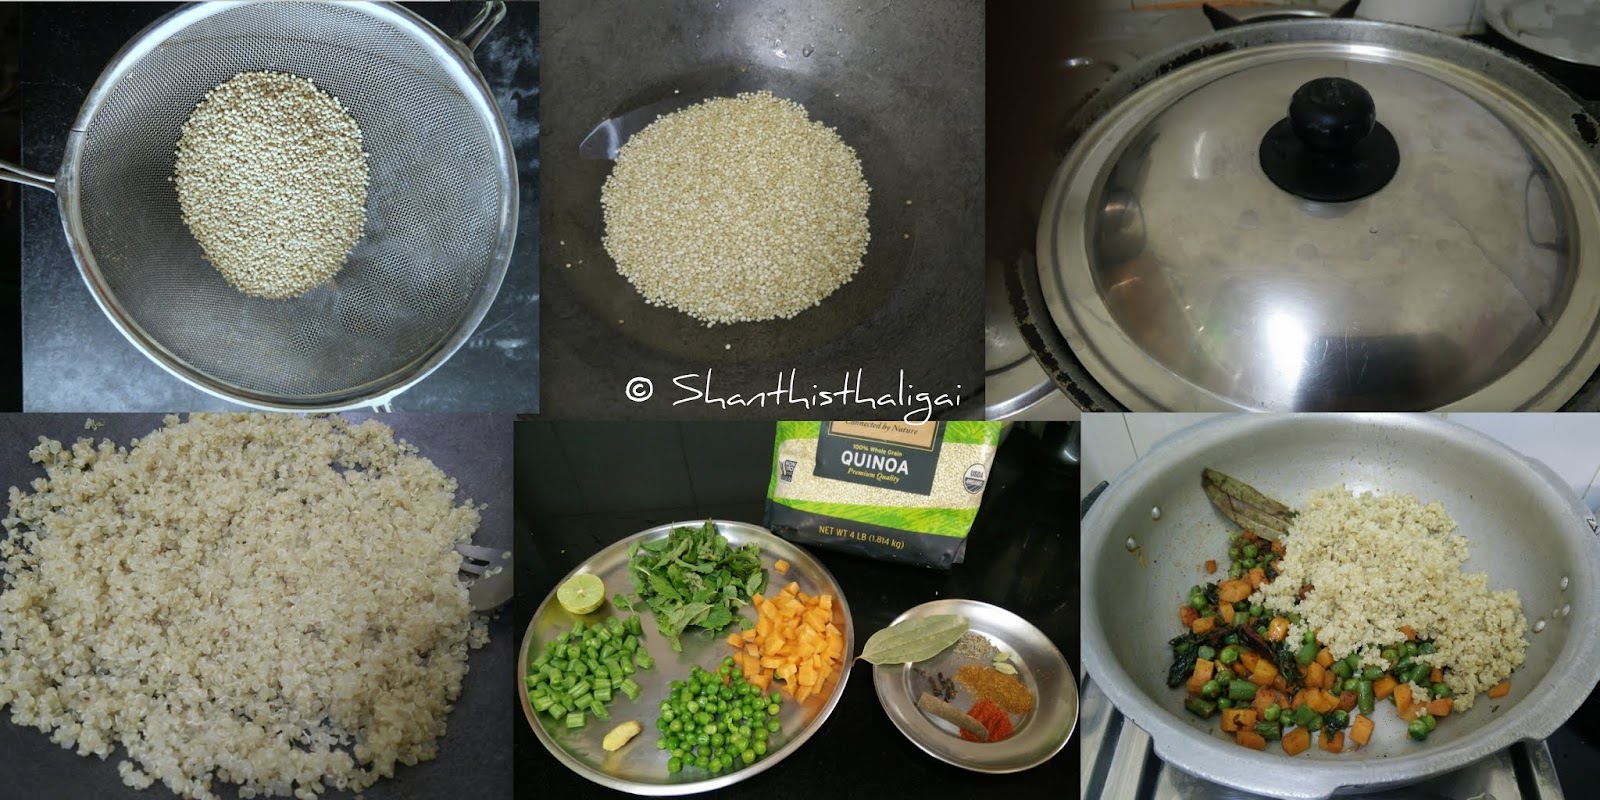 How to make  Quinoa biryani?, How to make Quinoa vegetable biryani?